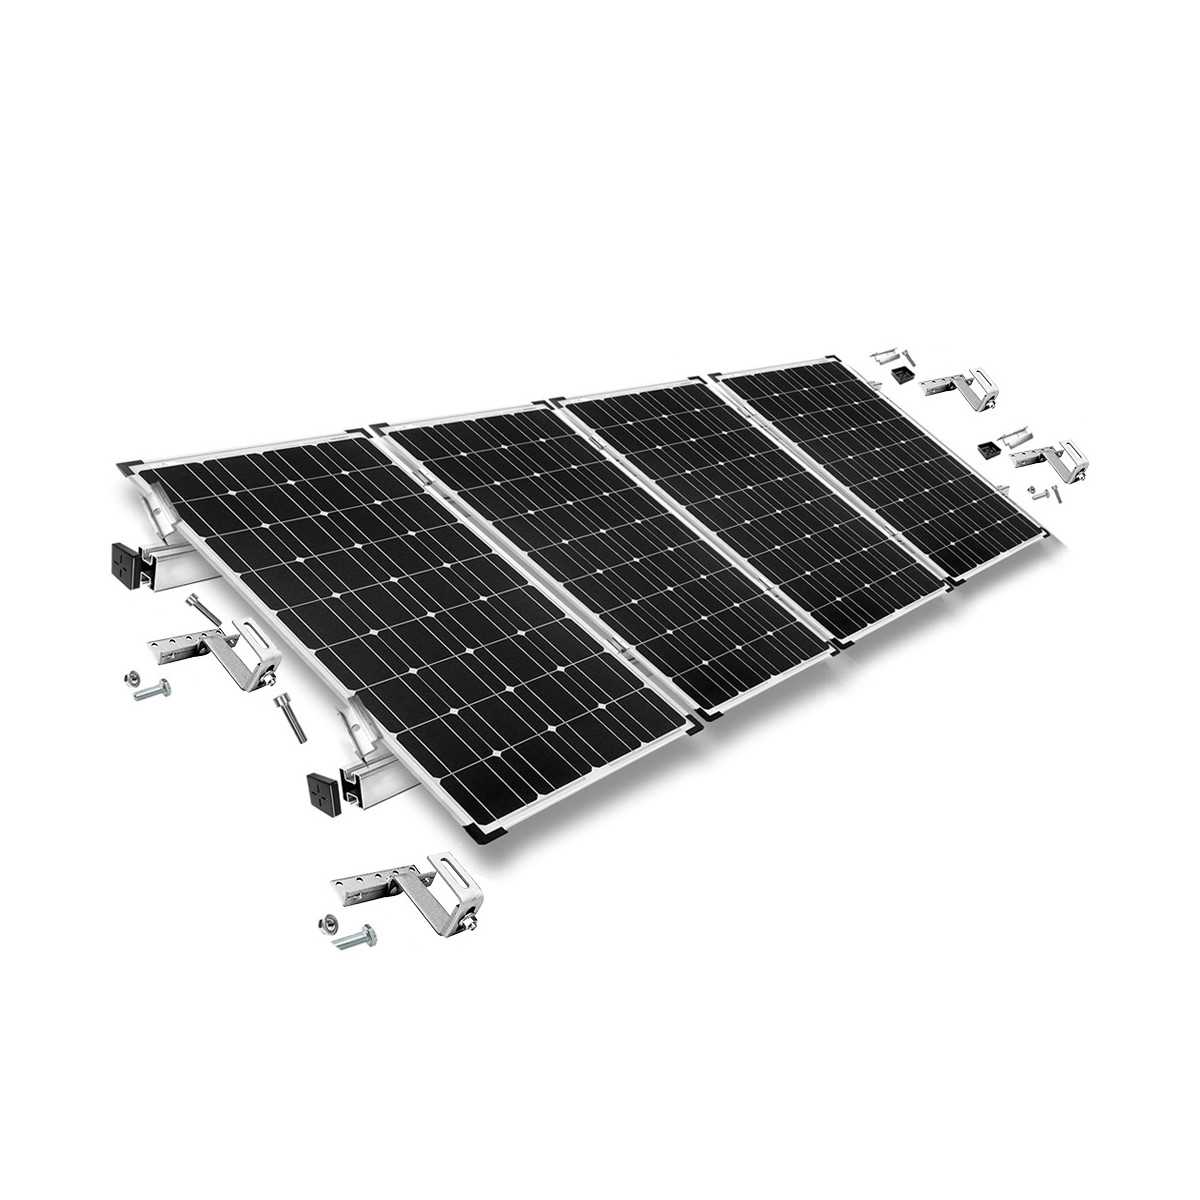 Kit di montaggio h30 regolabile con staffe per tetto (per tegole) per tetto inclinato 4 pannelli solari frame 30 mm